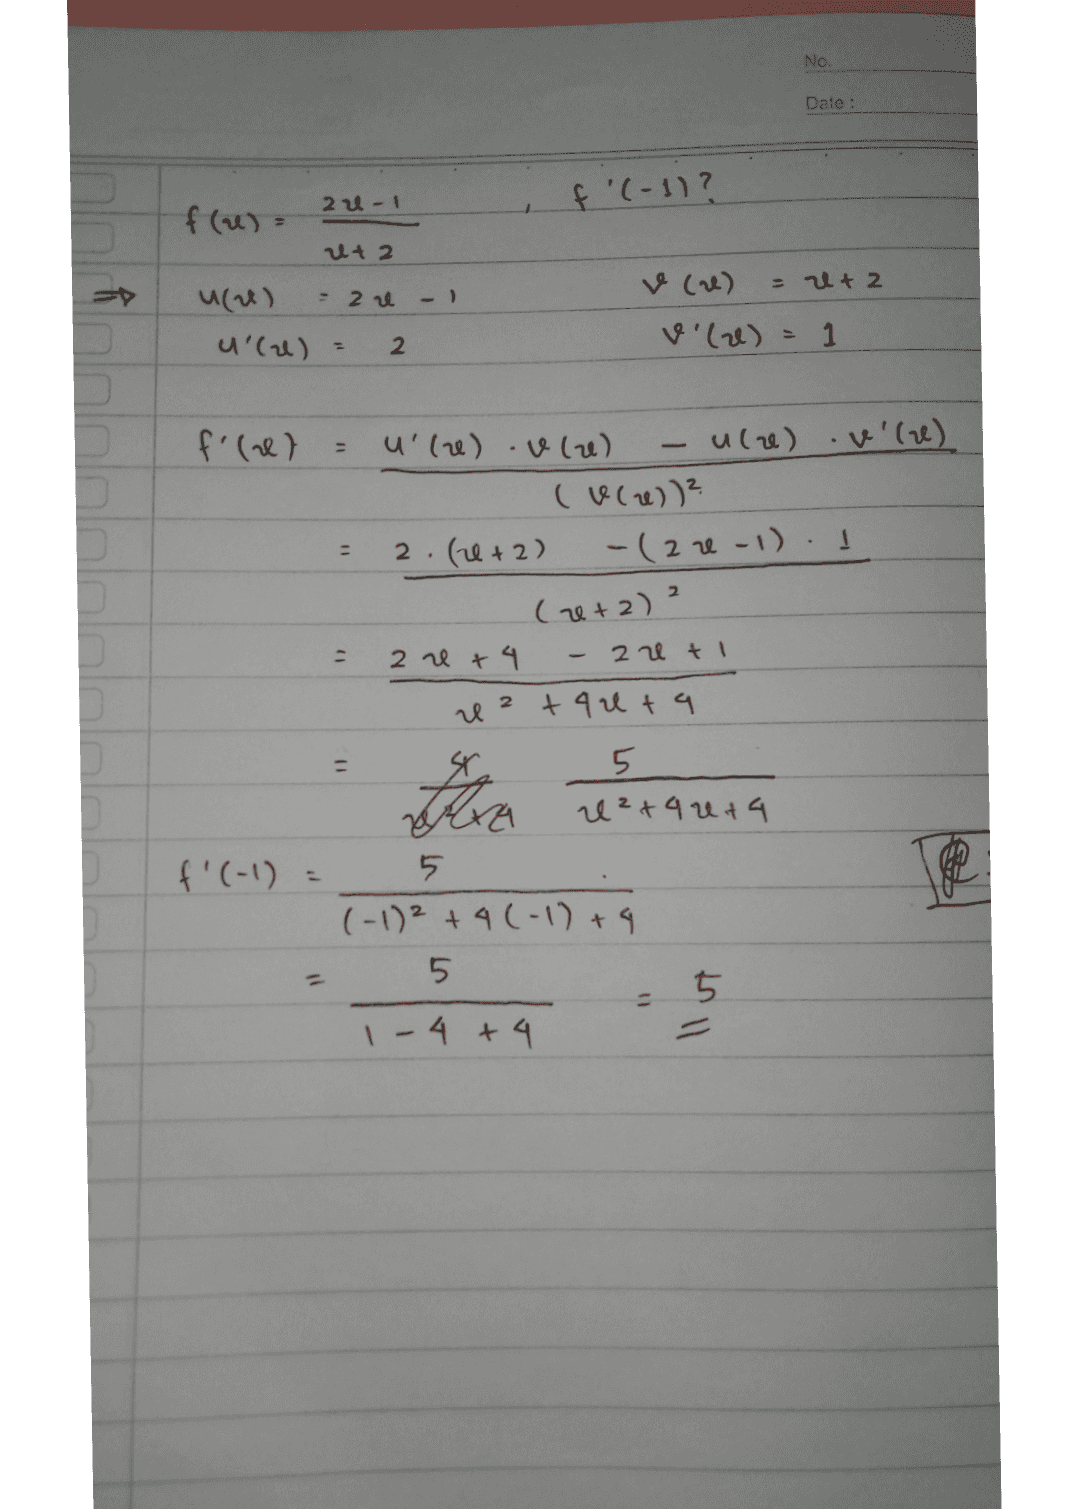 No. Date : 24-1 f'(-1)? f (a) ut 2 = i + 2 (2) - 22 u'lu) 2 v (2 vile) = 1 f'(el v (l) - - 2 u u le vle) ule) (wce)) ? 2. (1+2) -( 2-1) Gre+2) 2 2 et4 - 20 t +90 ta x 5 e 2+4 074 5 (-1)2 +4(-1) +9 5 5 1- 4 + 4 11 tra f'(-1) = 【使 11 - llut 